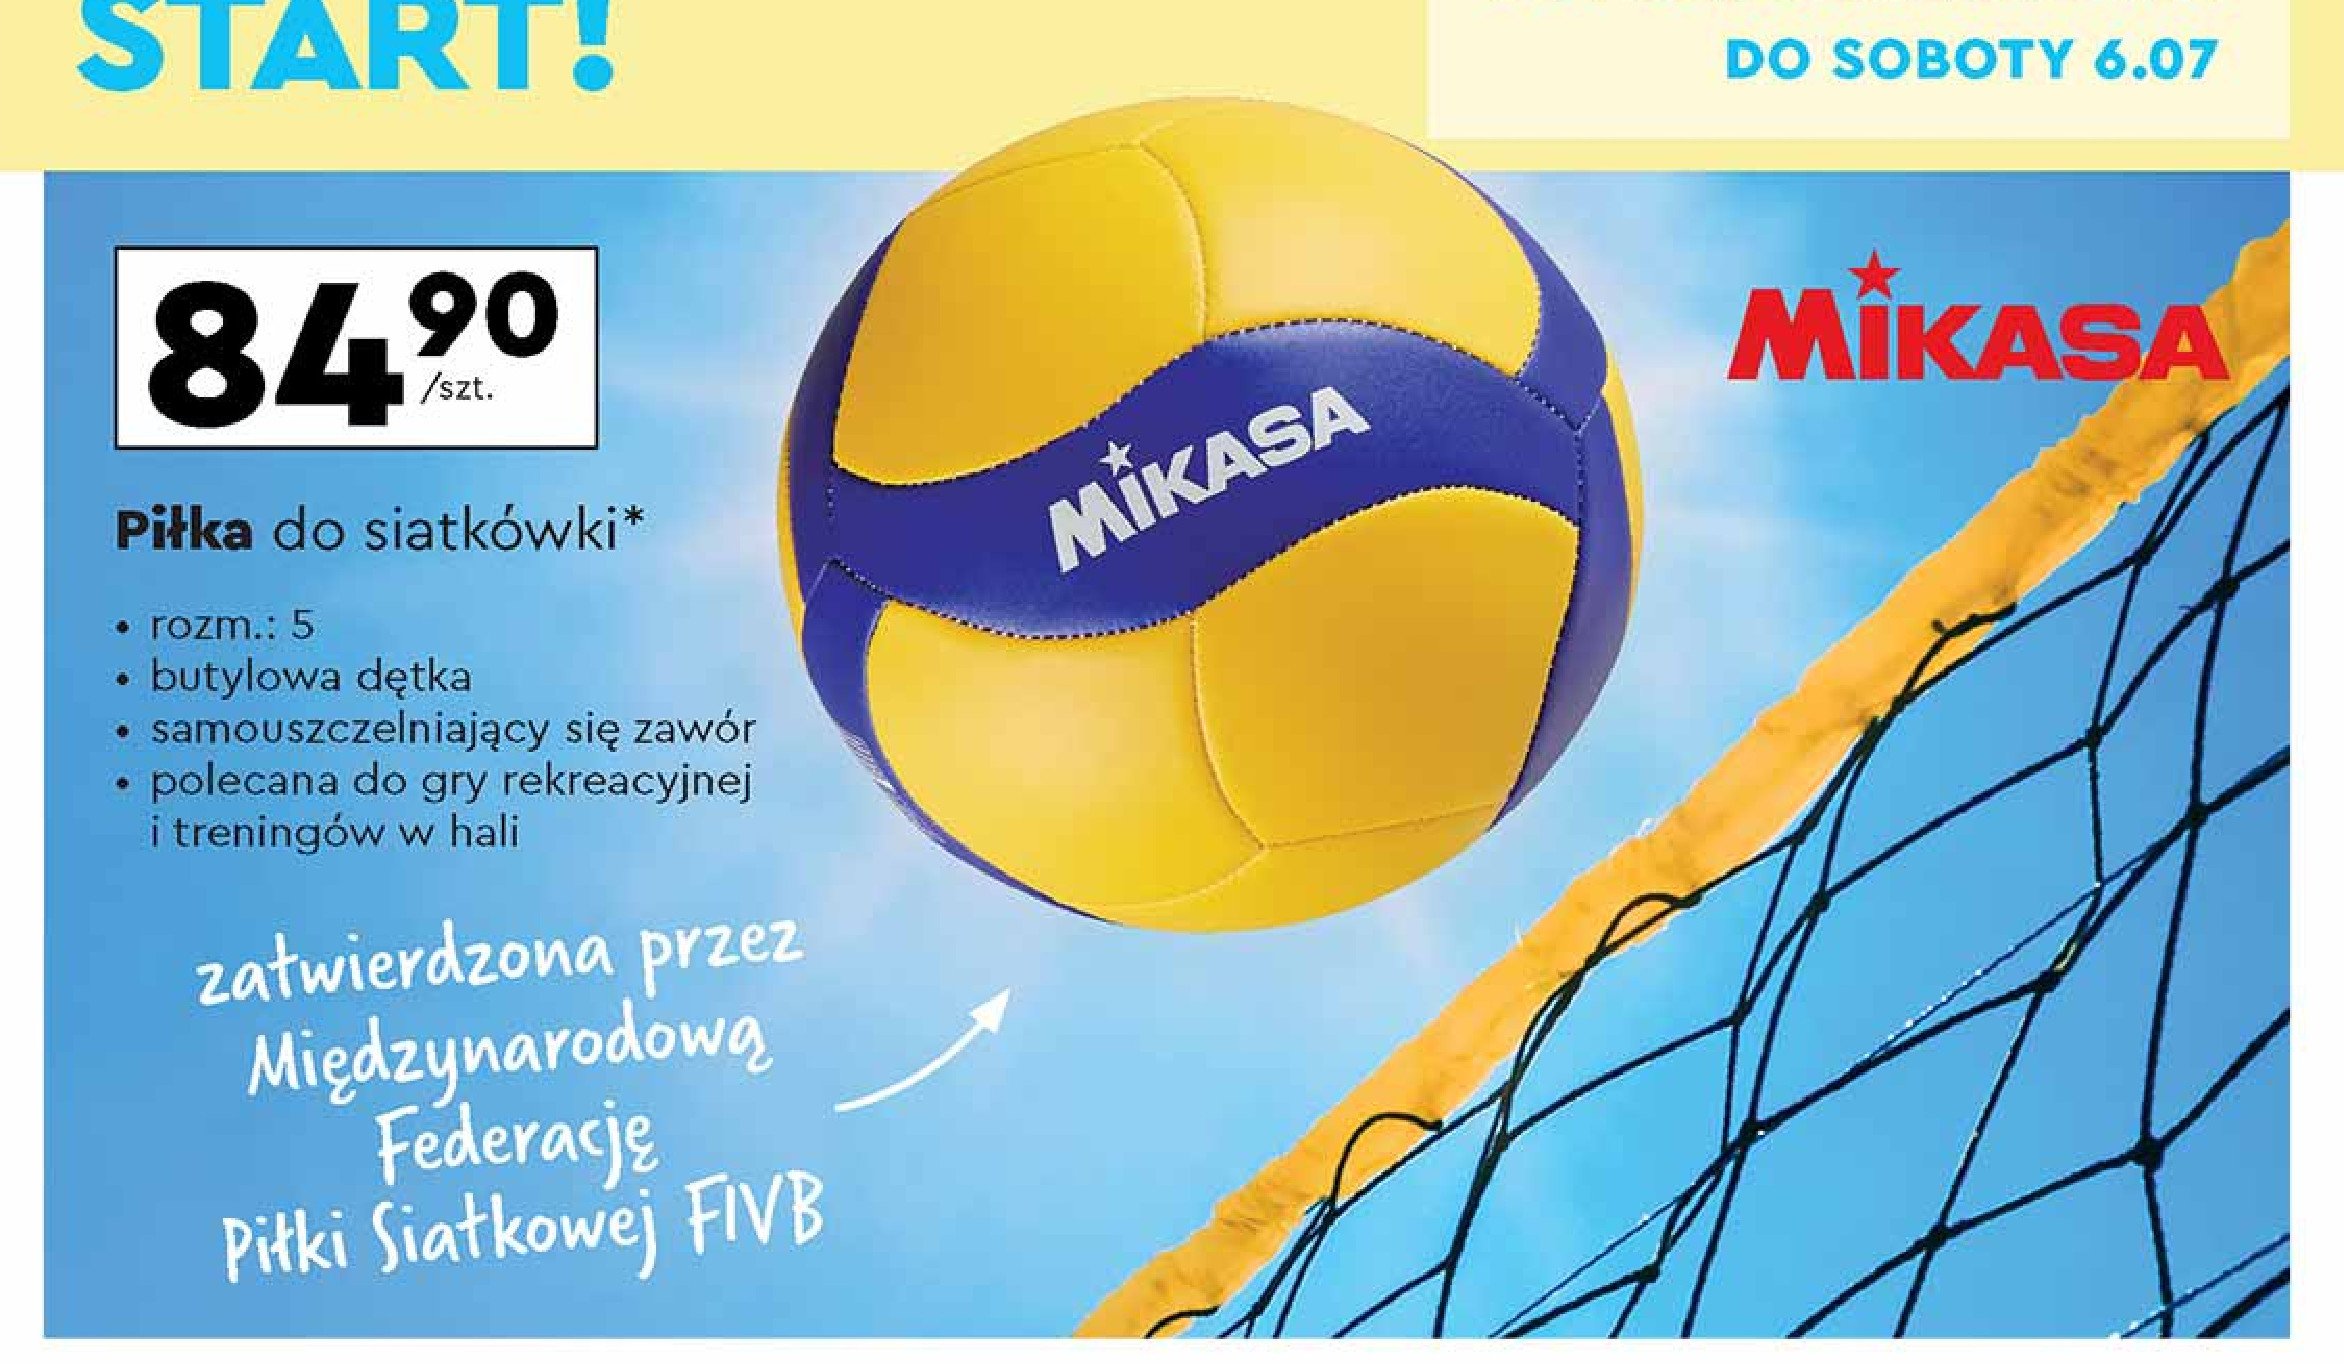 Piłka do siatkówki Mikasa promocja w Biedronka